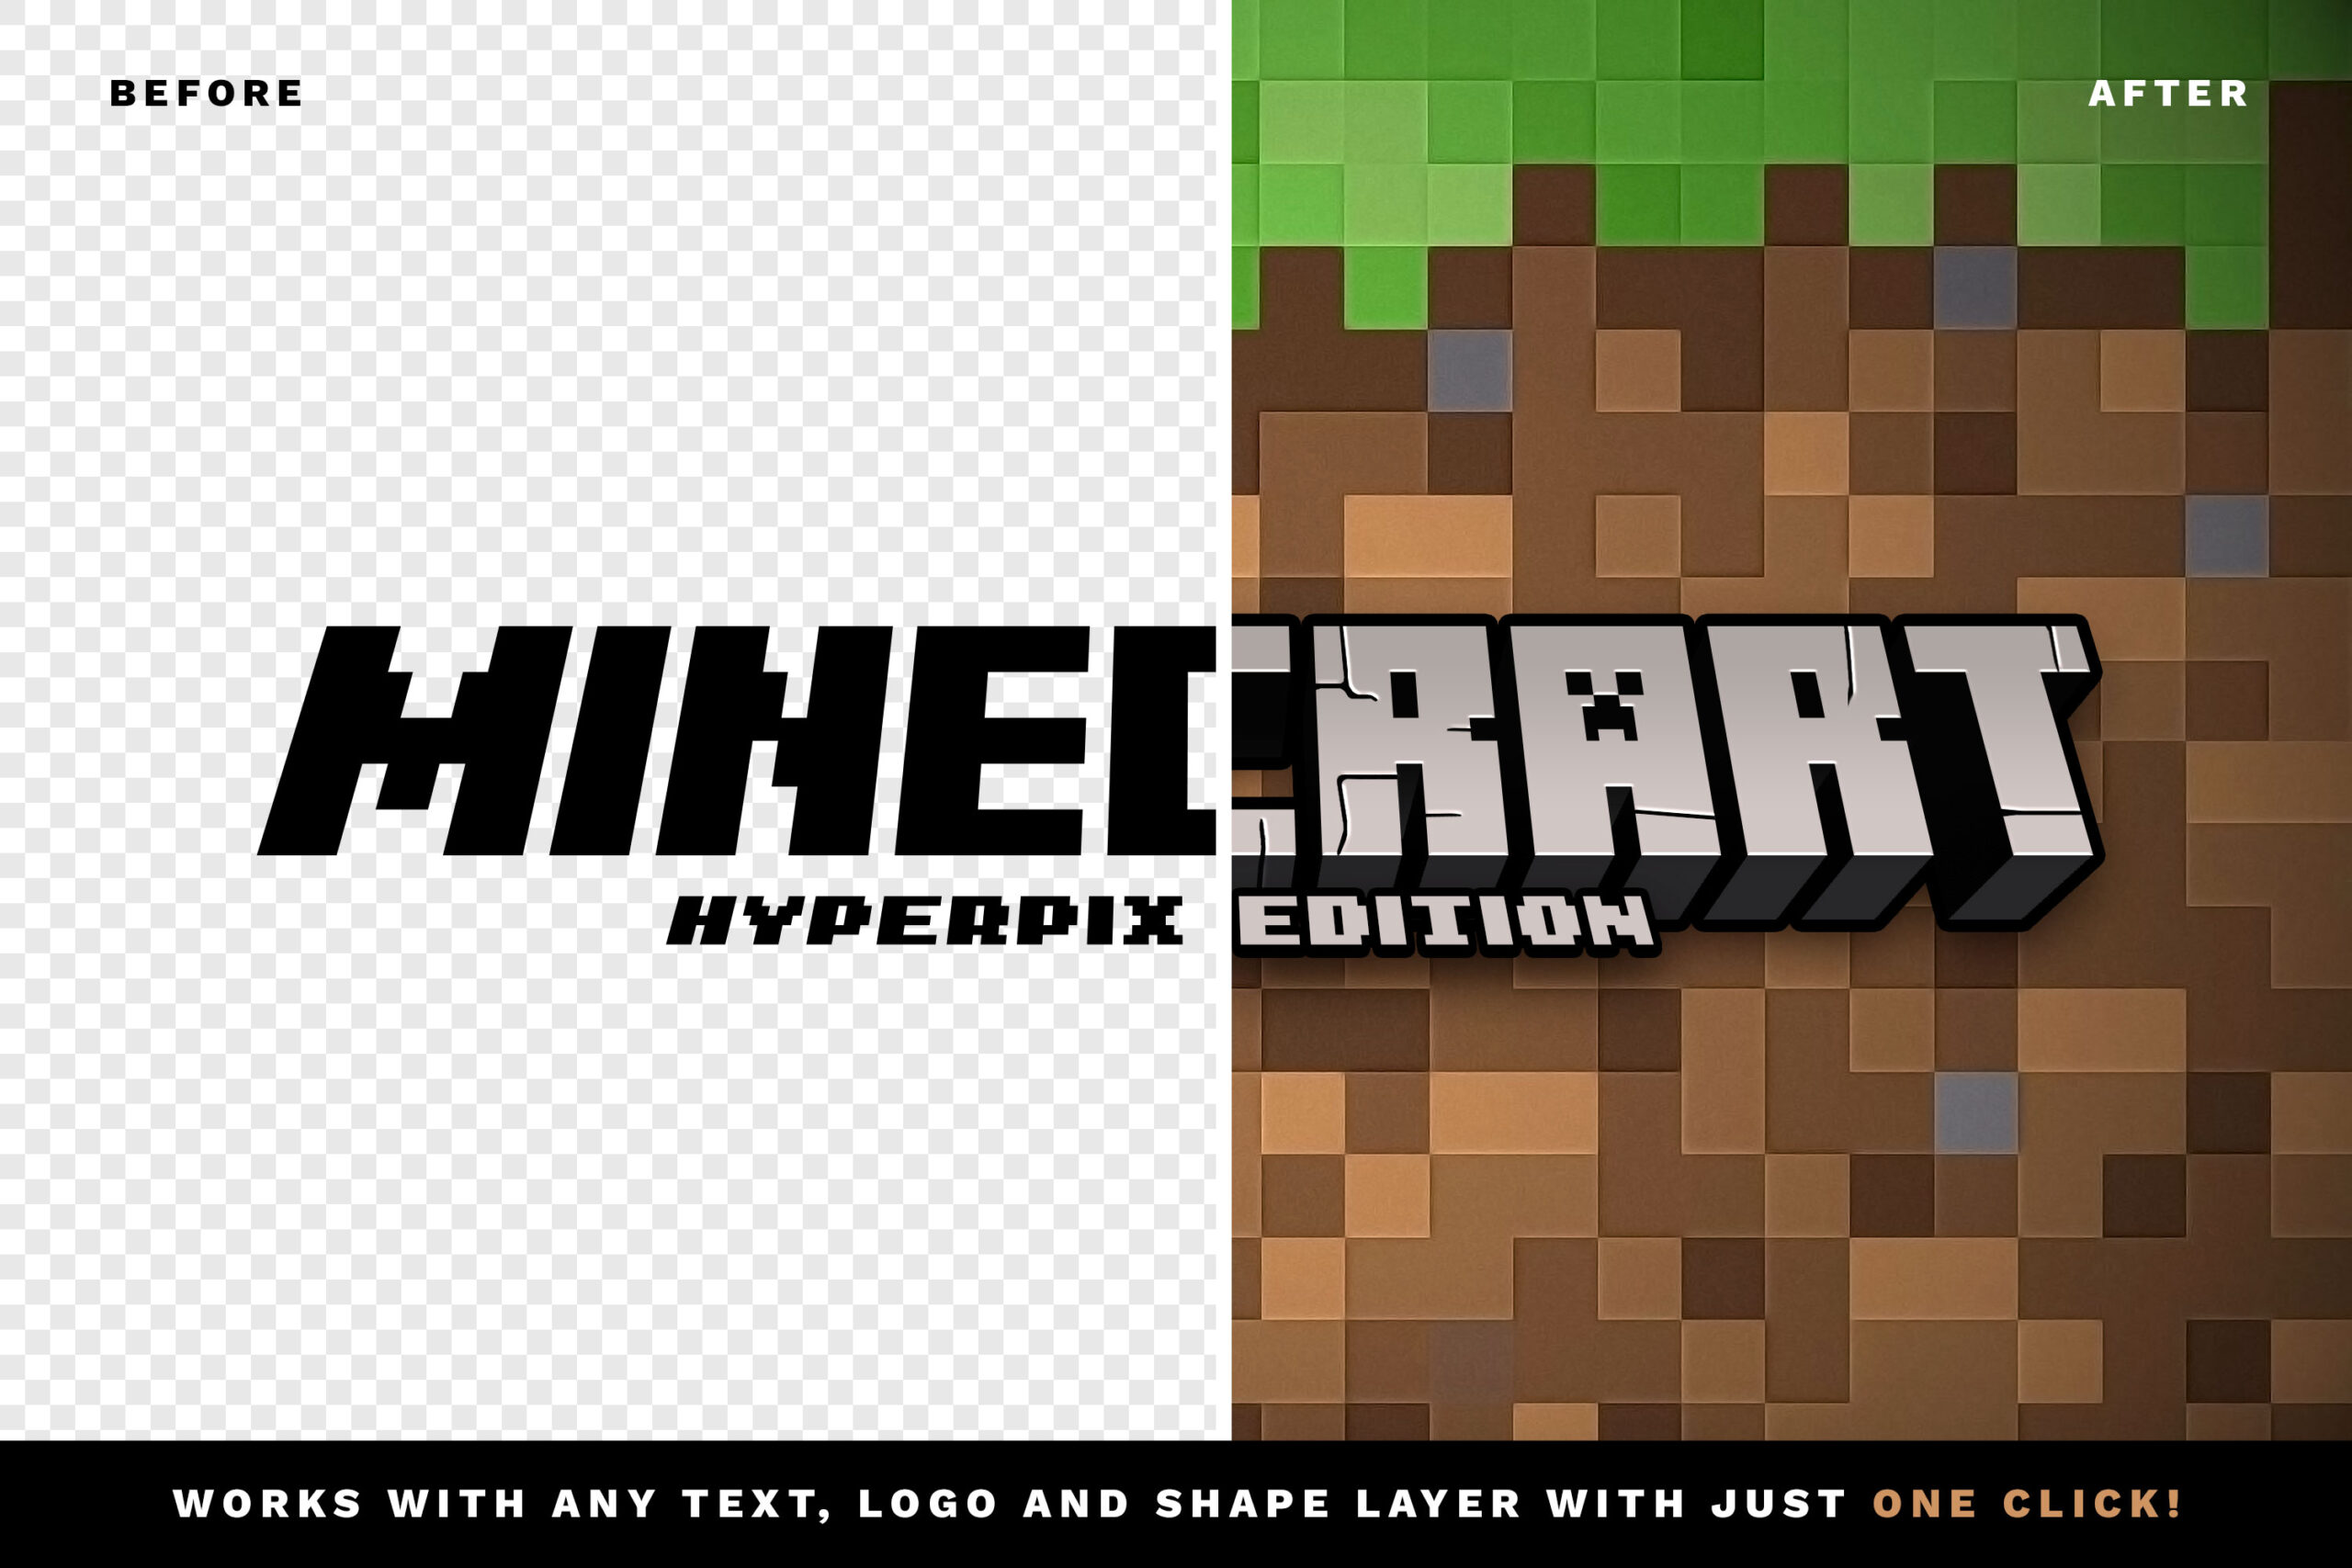 Minecraft Text Effect in Photoshop